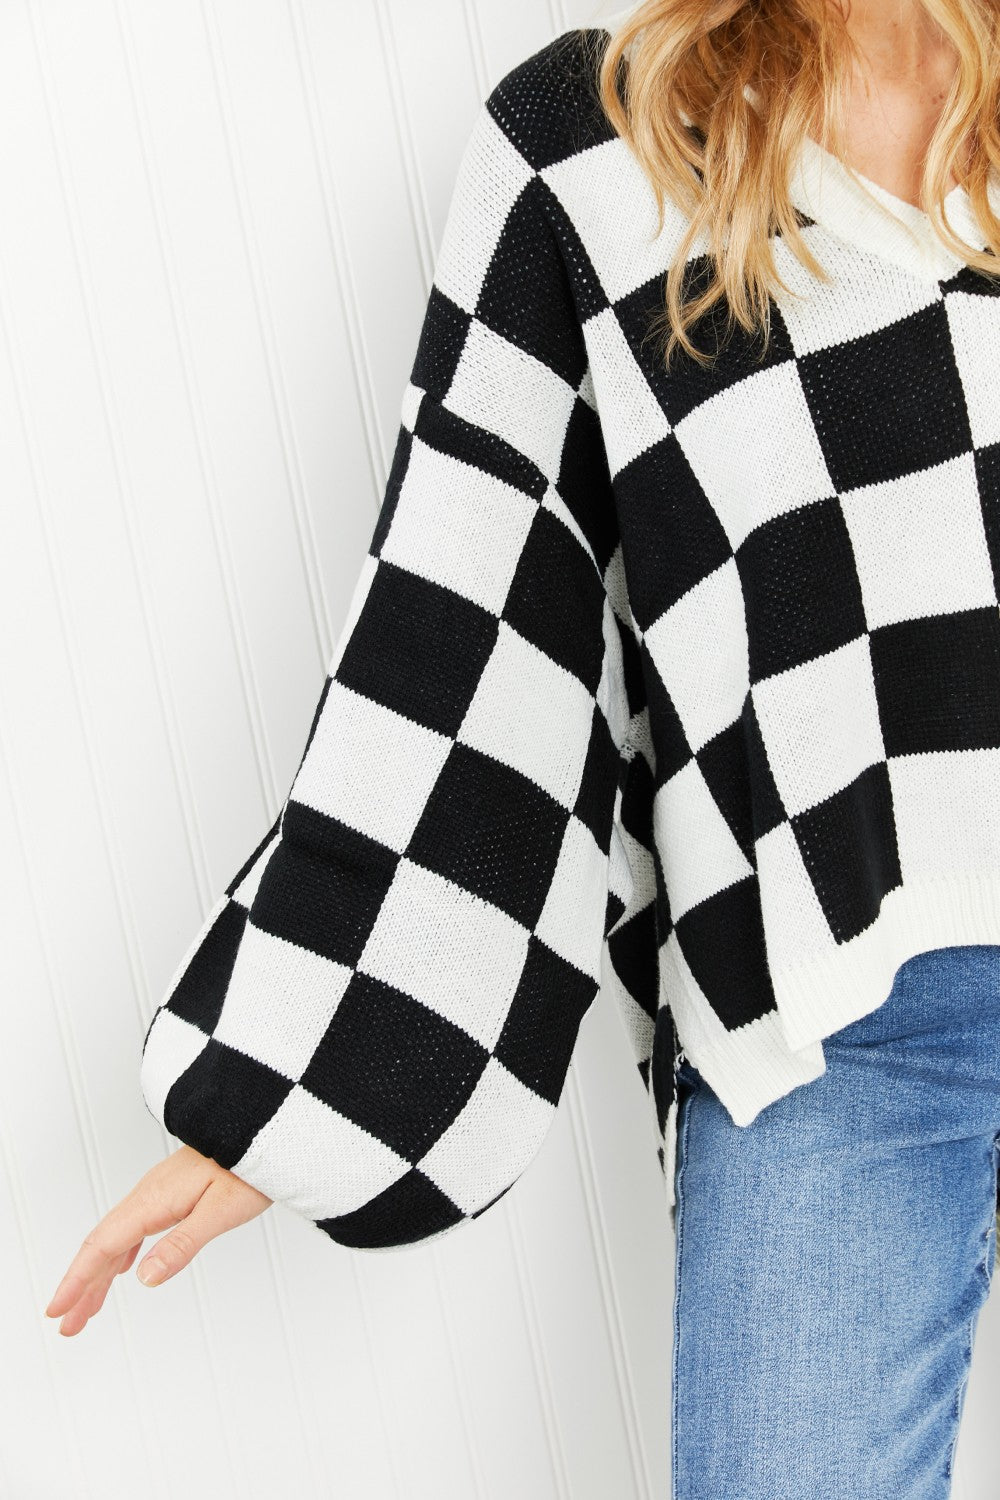 Davi & Dani Reality Check Full Size Checkered V-Neck Sweater